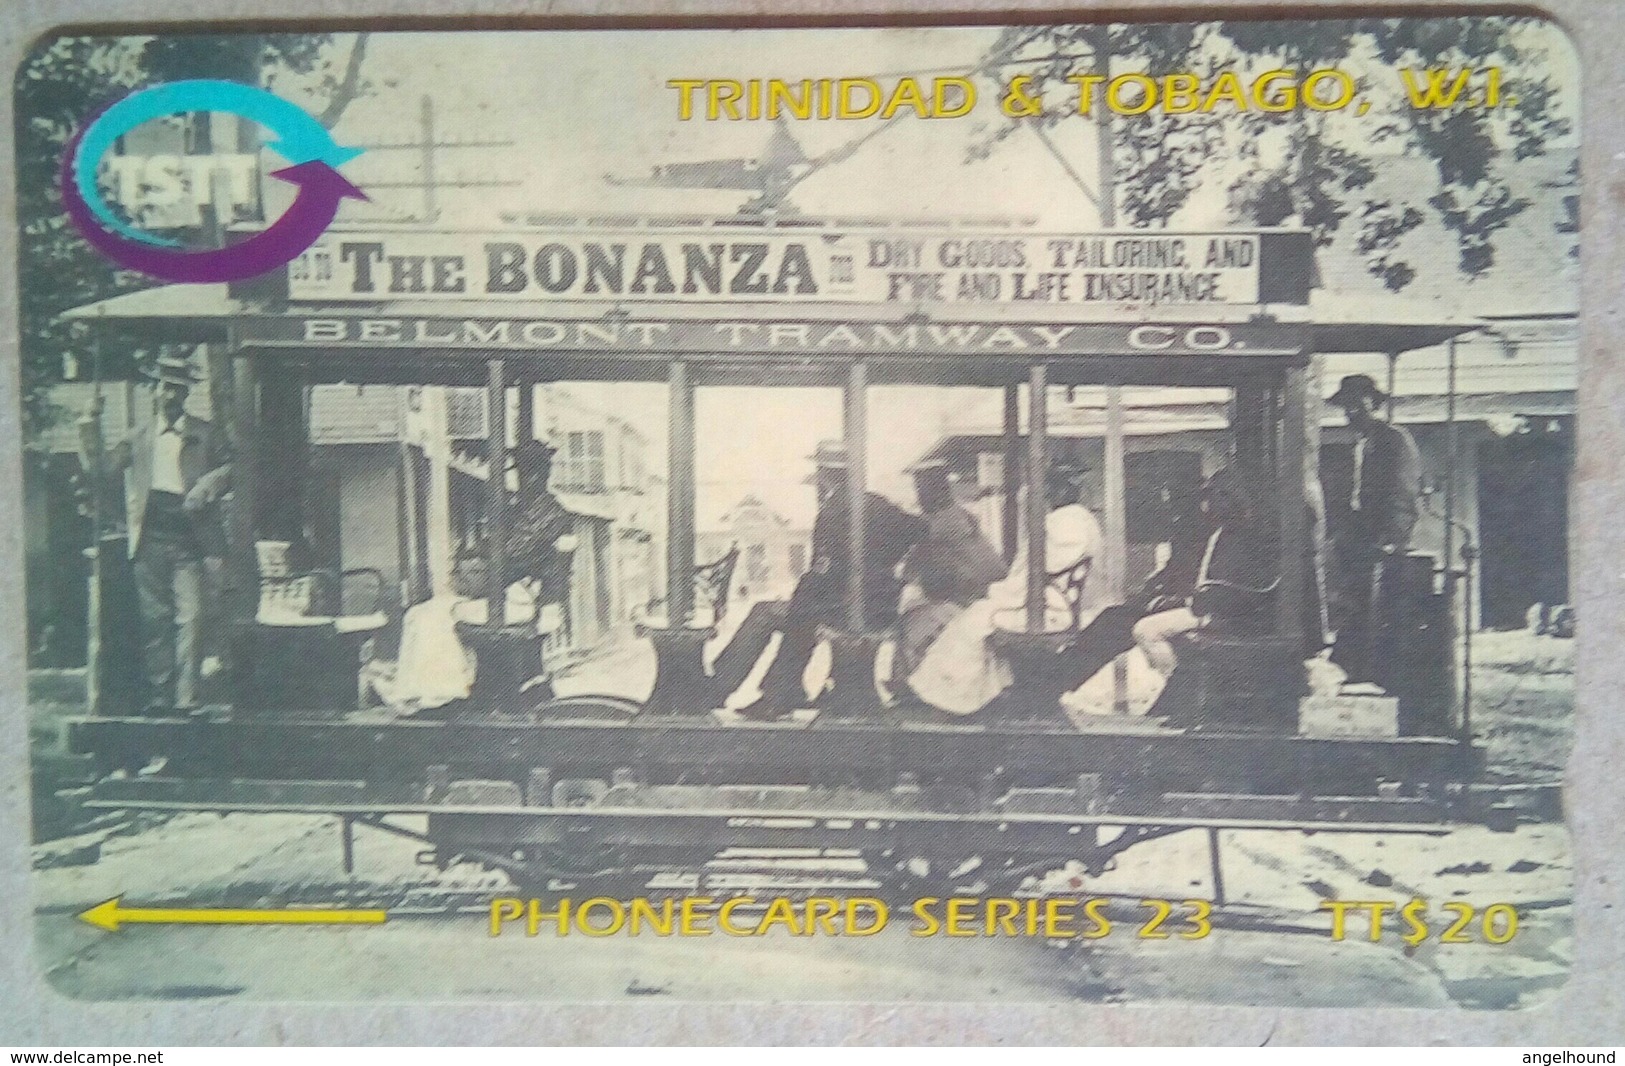 273CTTA Belmont Tramway TT$20 - Trinité & Tobago